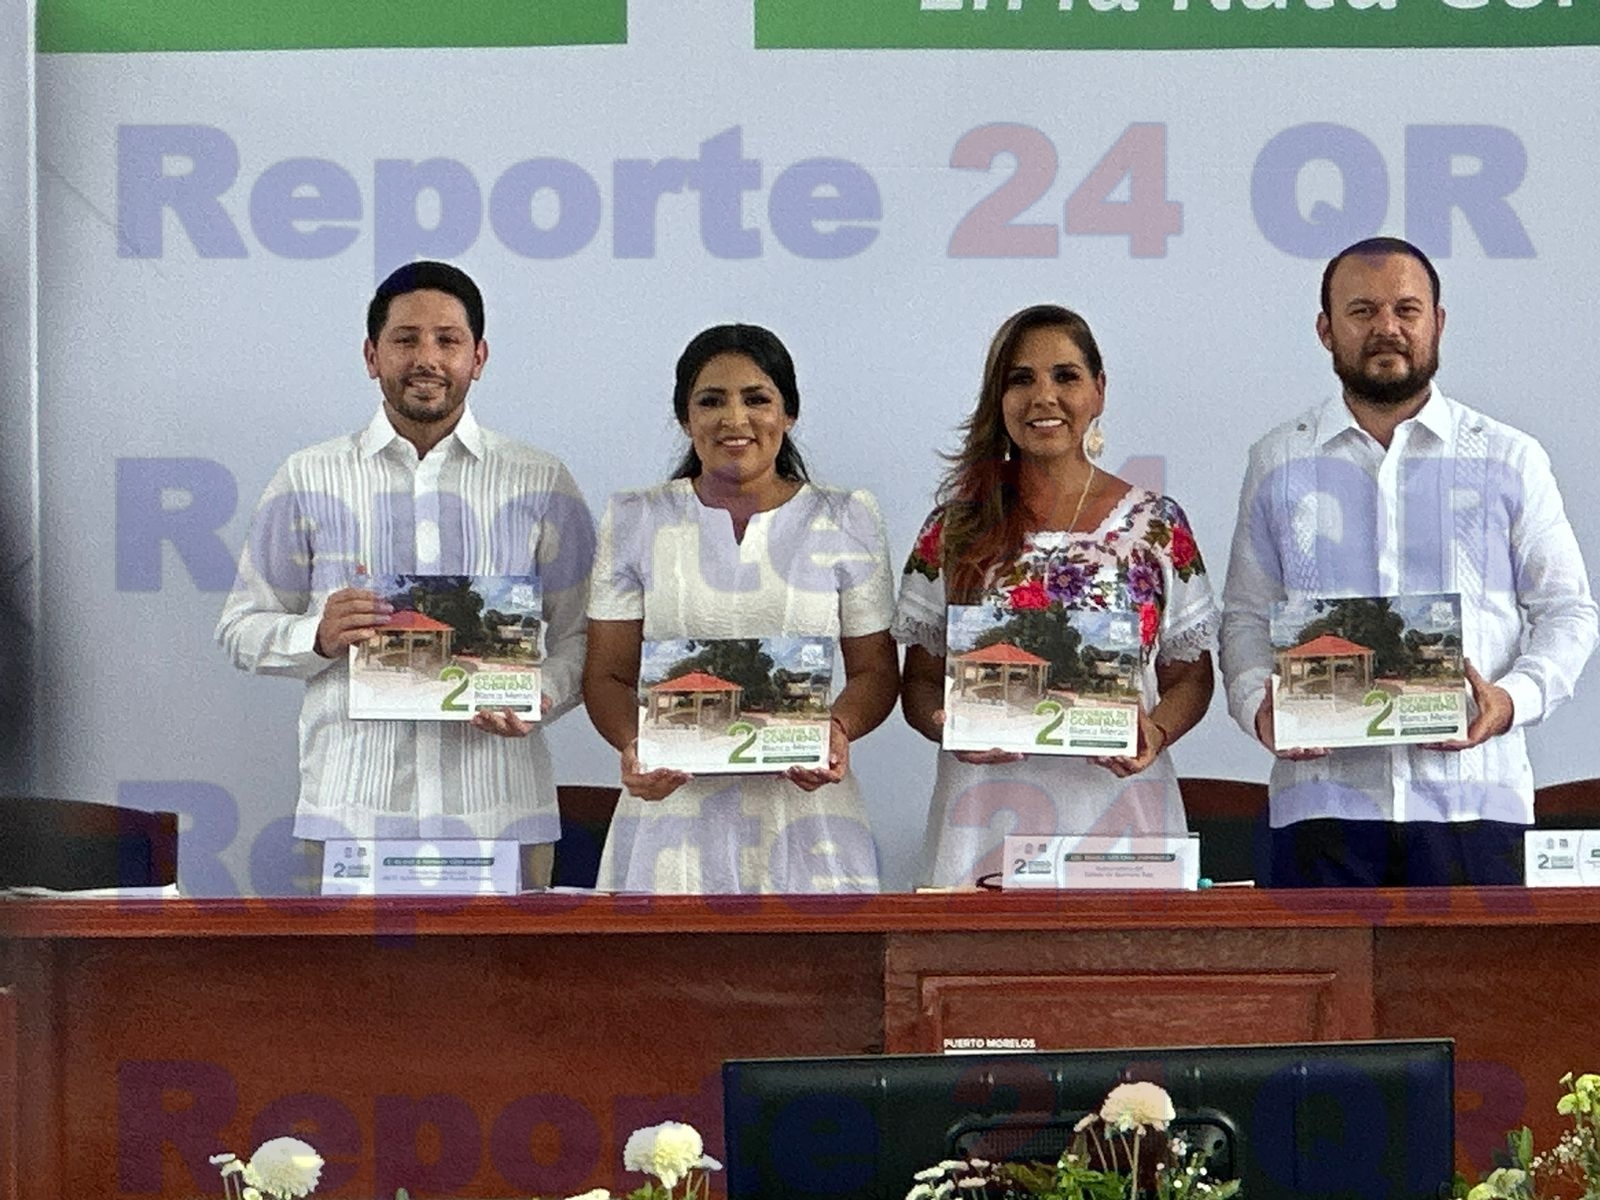 En Puerto Morelos trabajamos por un municipio con progreso y justicia social